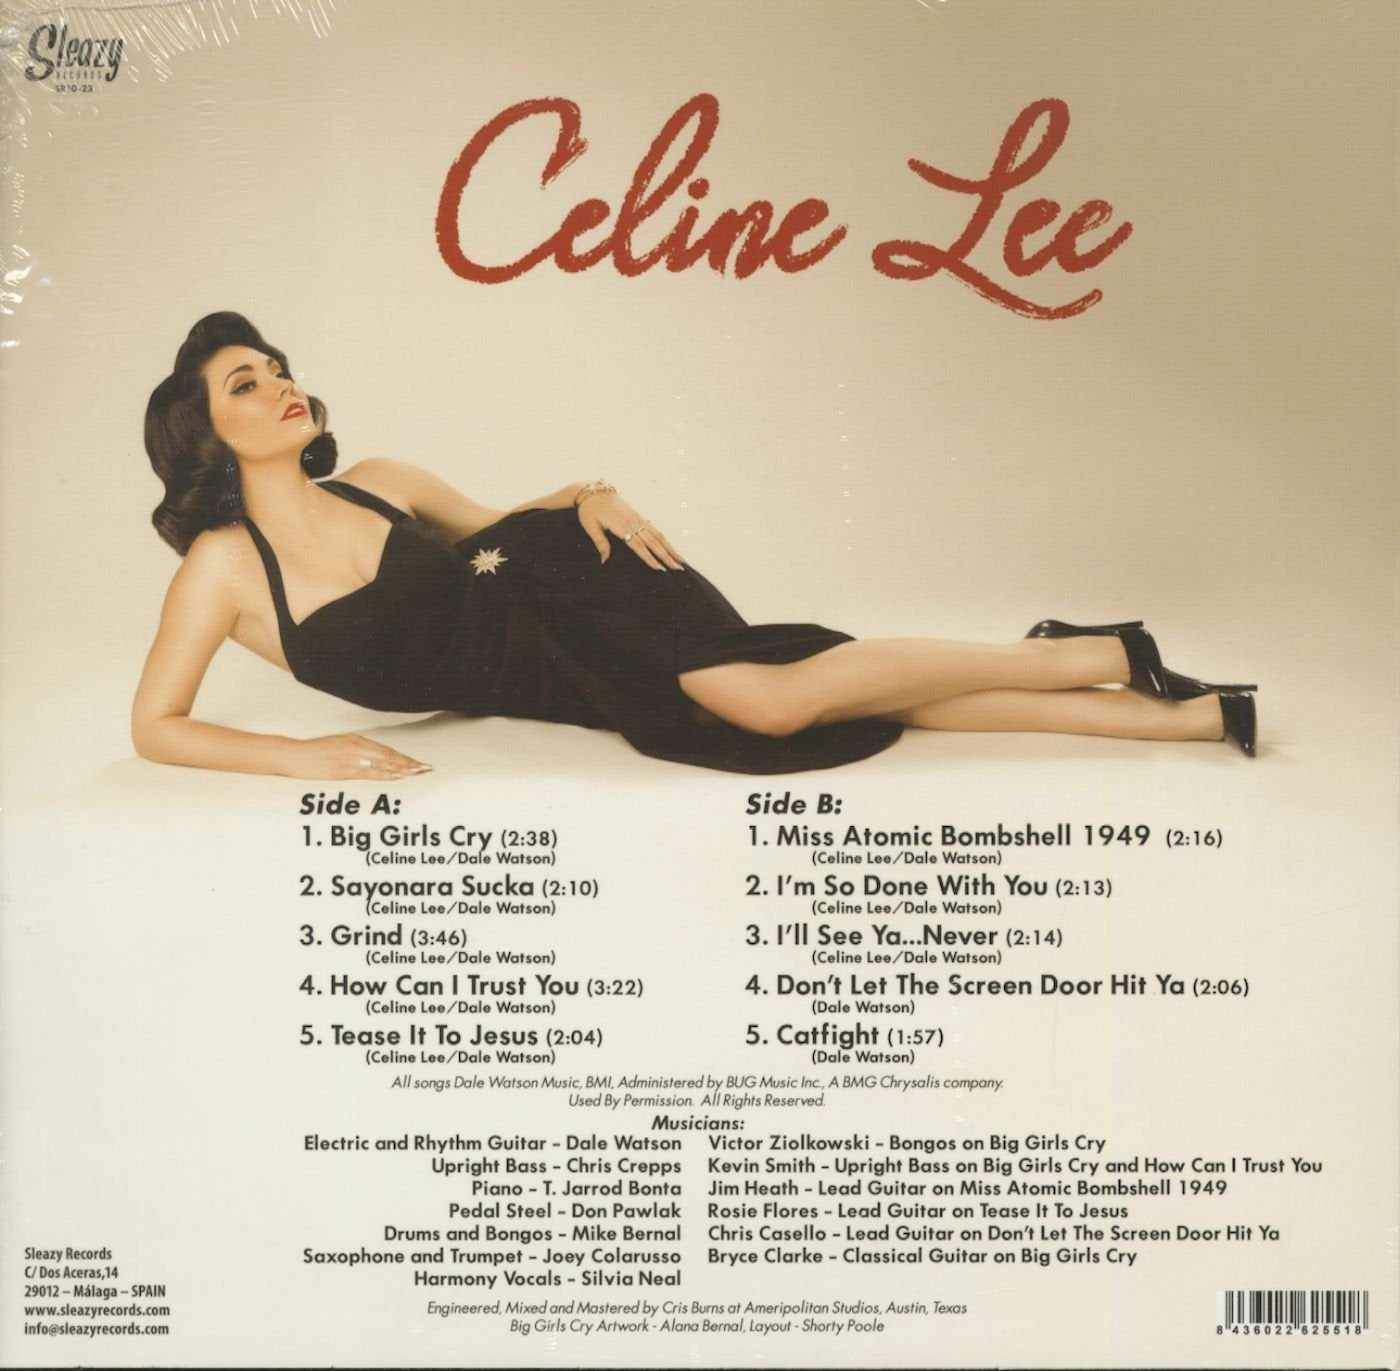 10inch - VA - Celine Lee & Dale Watson - Sayonara Sucka